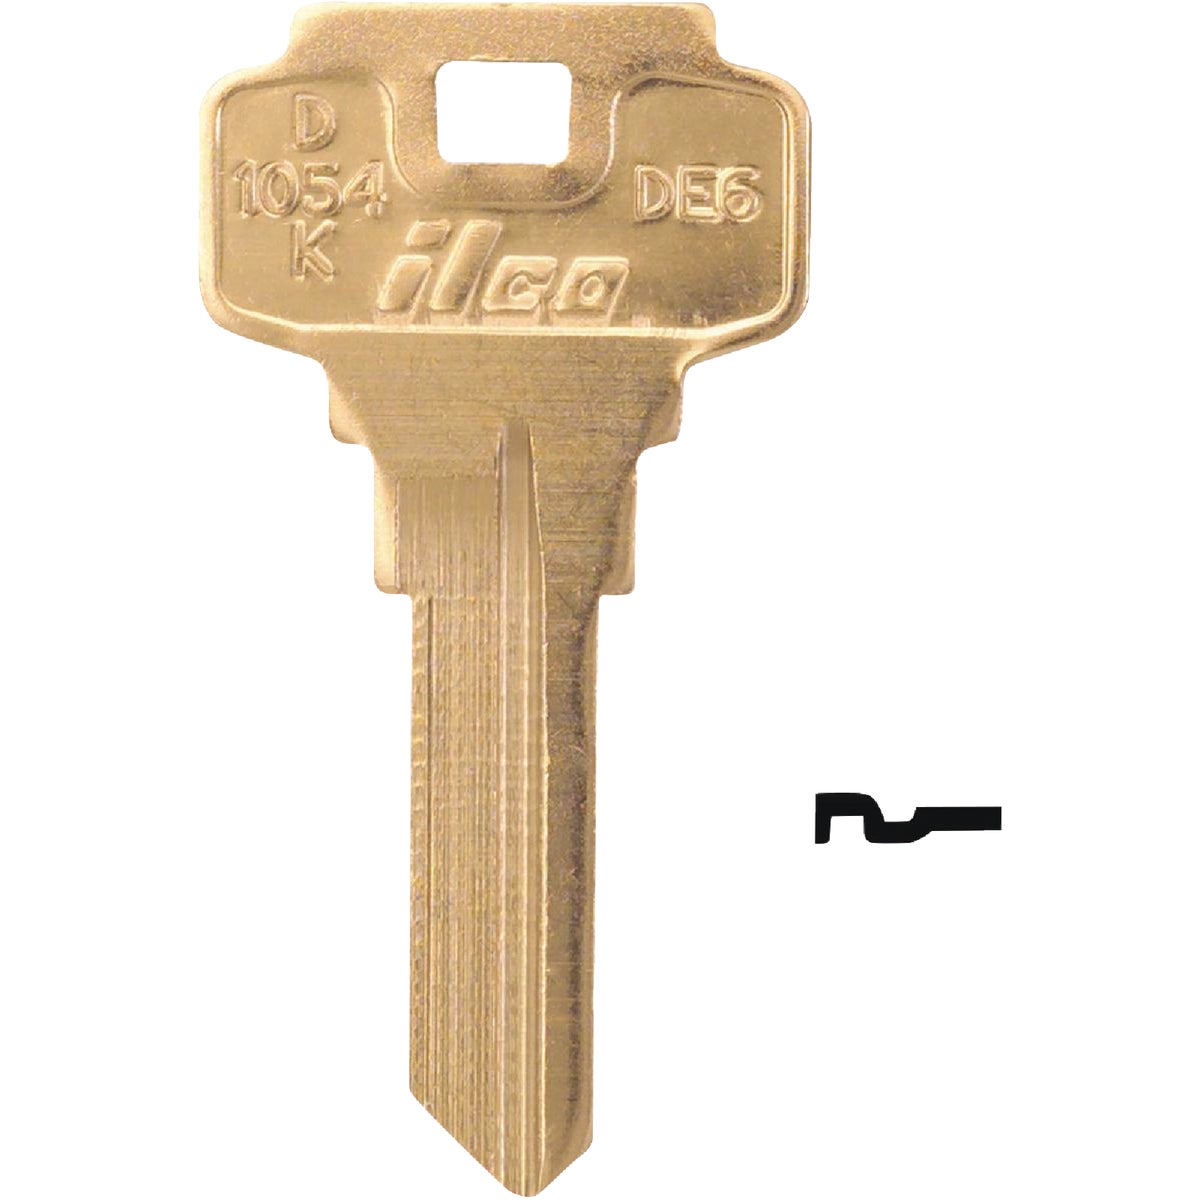 ILCO Key Blank For Dexter Lockset 5 Pin / D1054K (10-Pack)